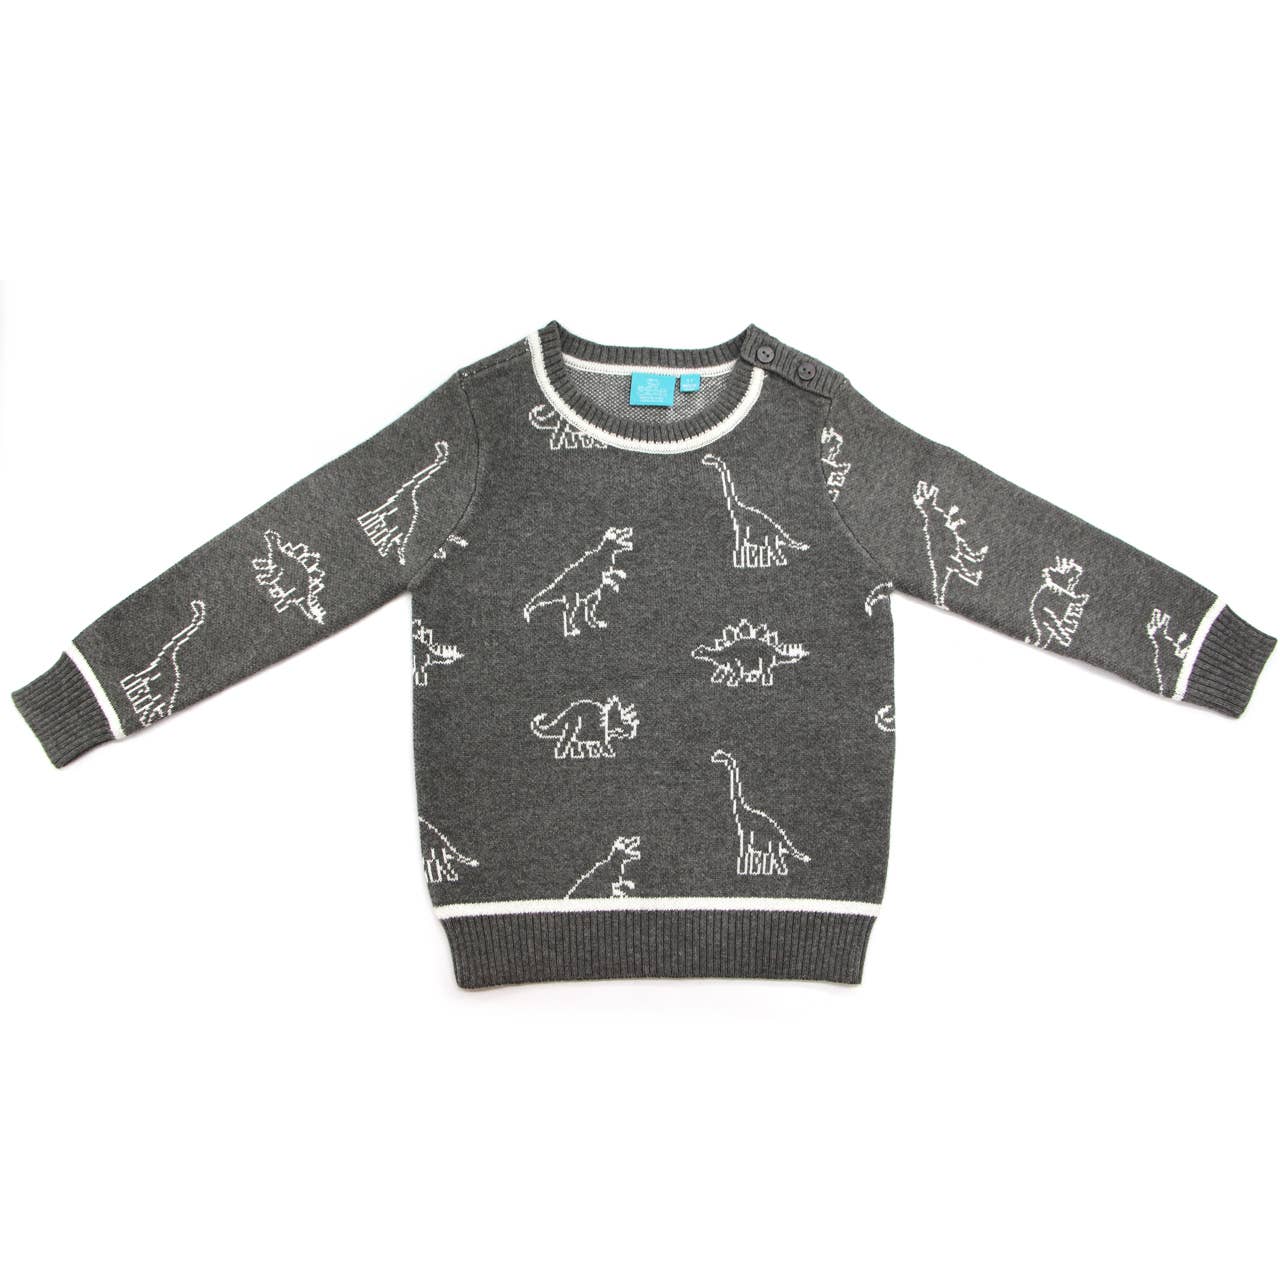 Leon Dinosaur Sweater for Toddler